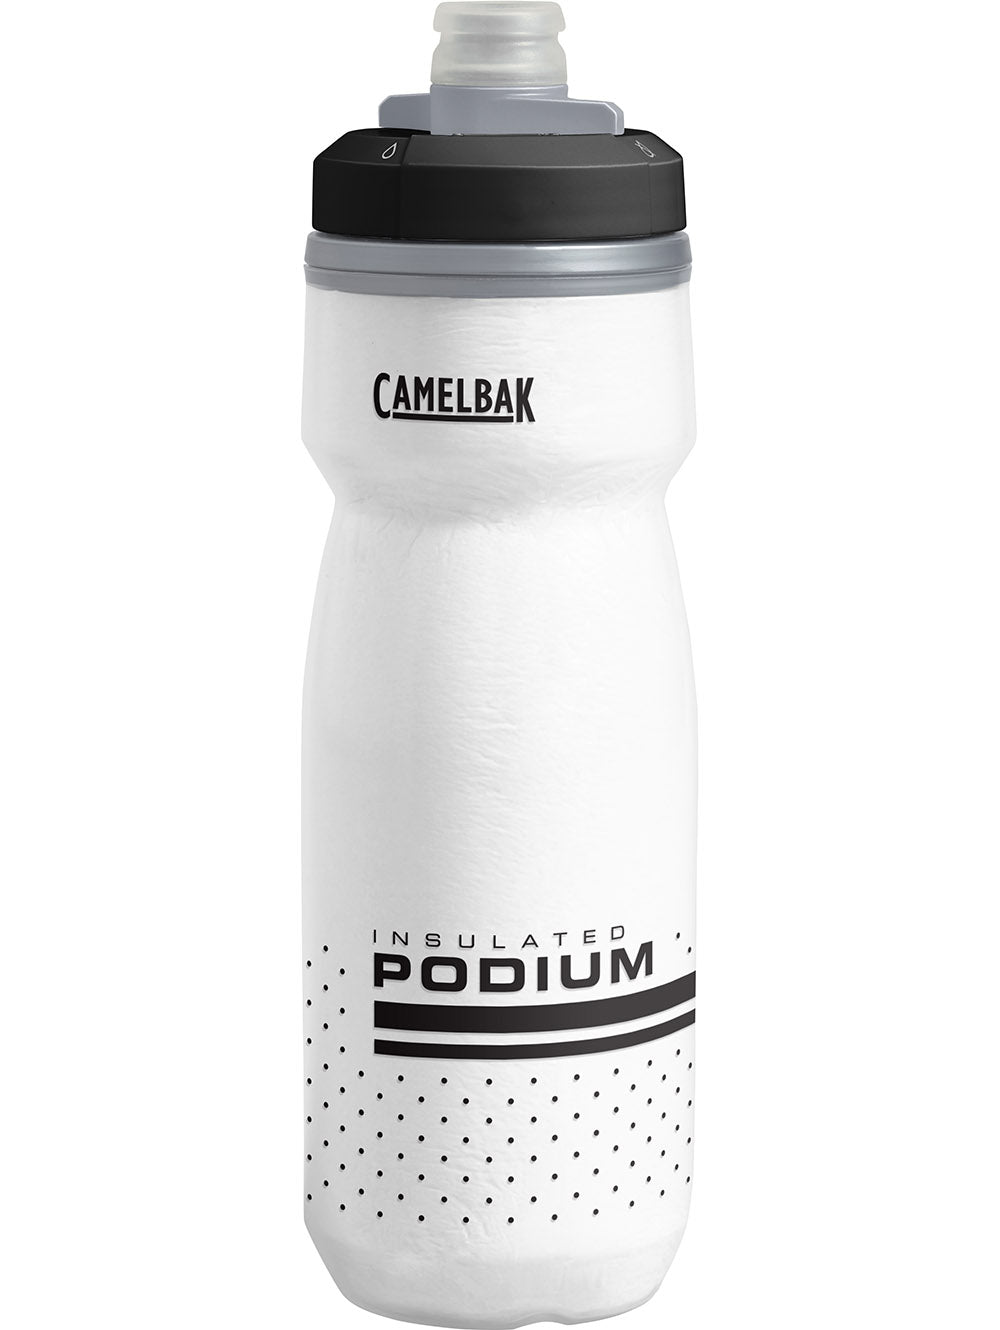 camelbak-bottle-insulated-podium-chill-white-black-600ml